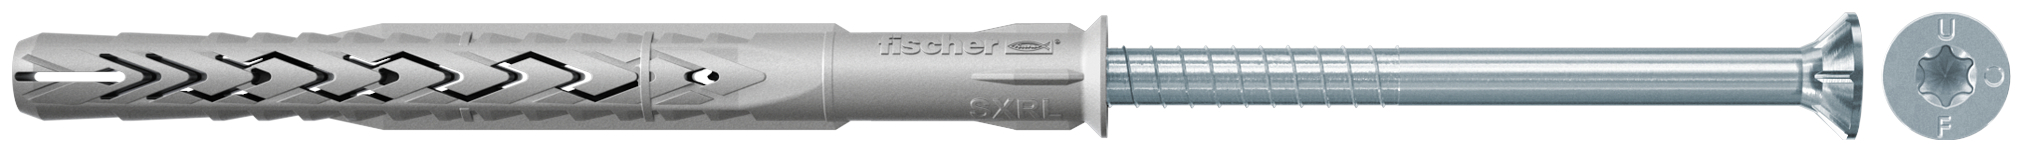 fischer Tasselli prolungati SXRL 14X200 T (1 Pz.) Tassello prolungato in nylon con marcatura CE con vite premontata T.S.P. impronta torx fie2564